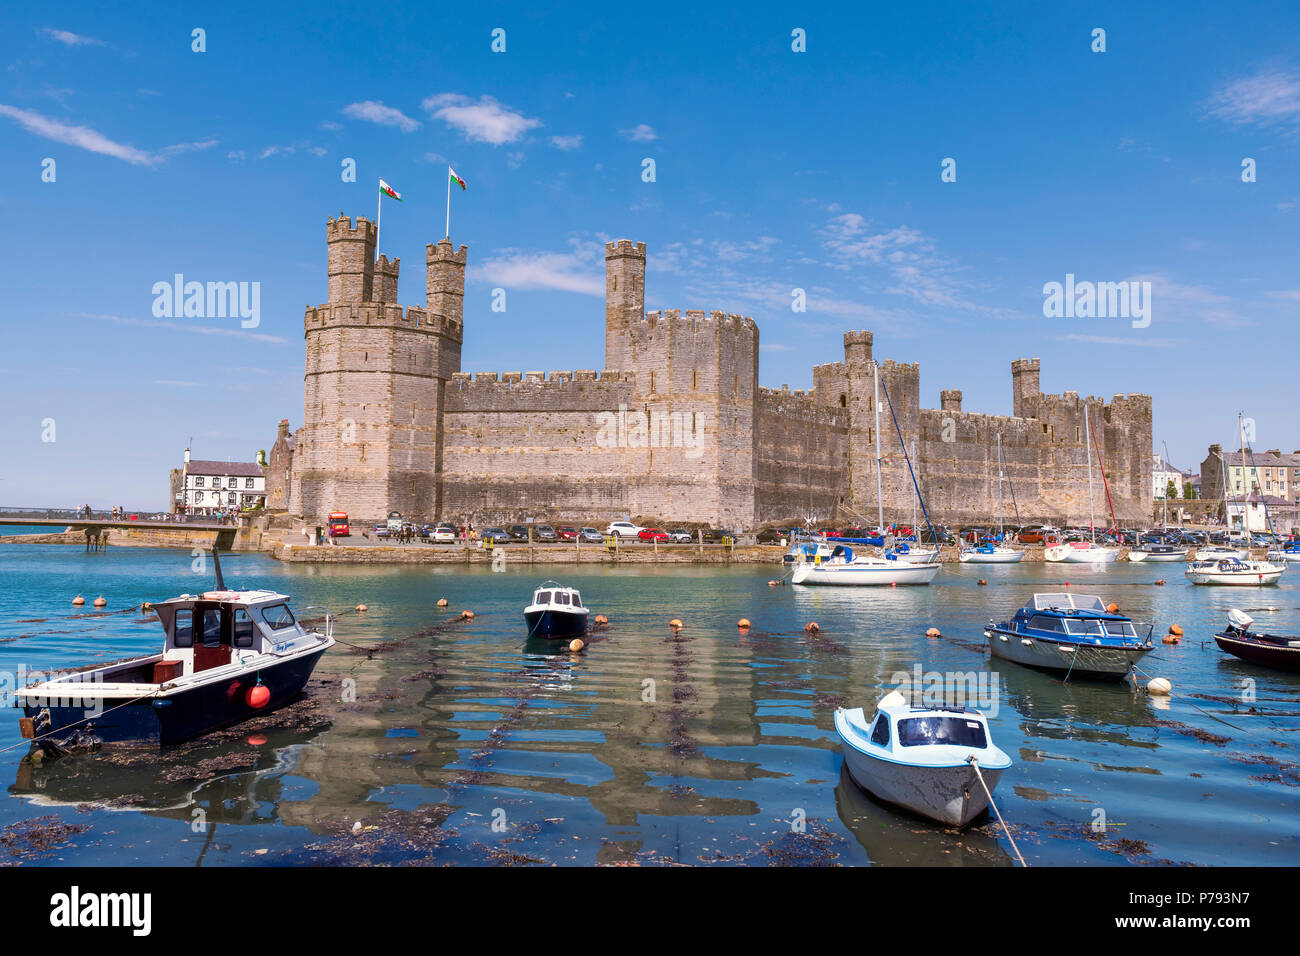 Castillo de Caernarfon en Gales, Reino Unido. Día soleado de verano, con los barcos en el puerto. Foto de stock